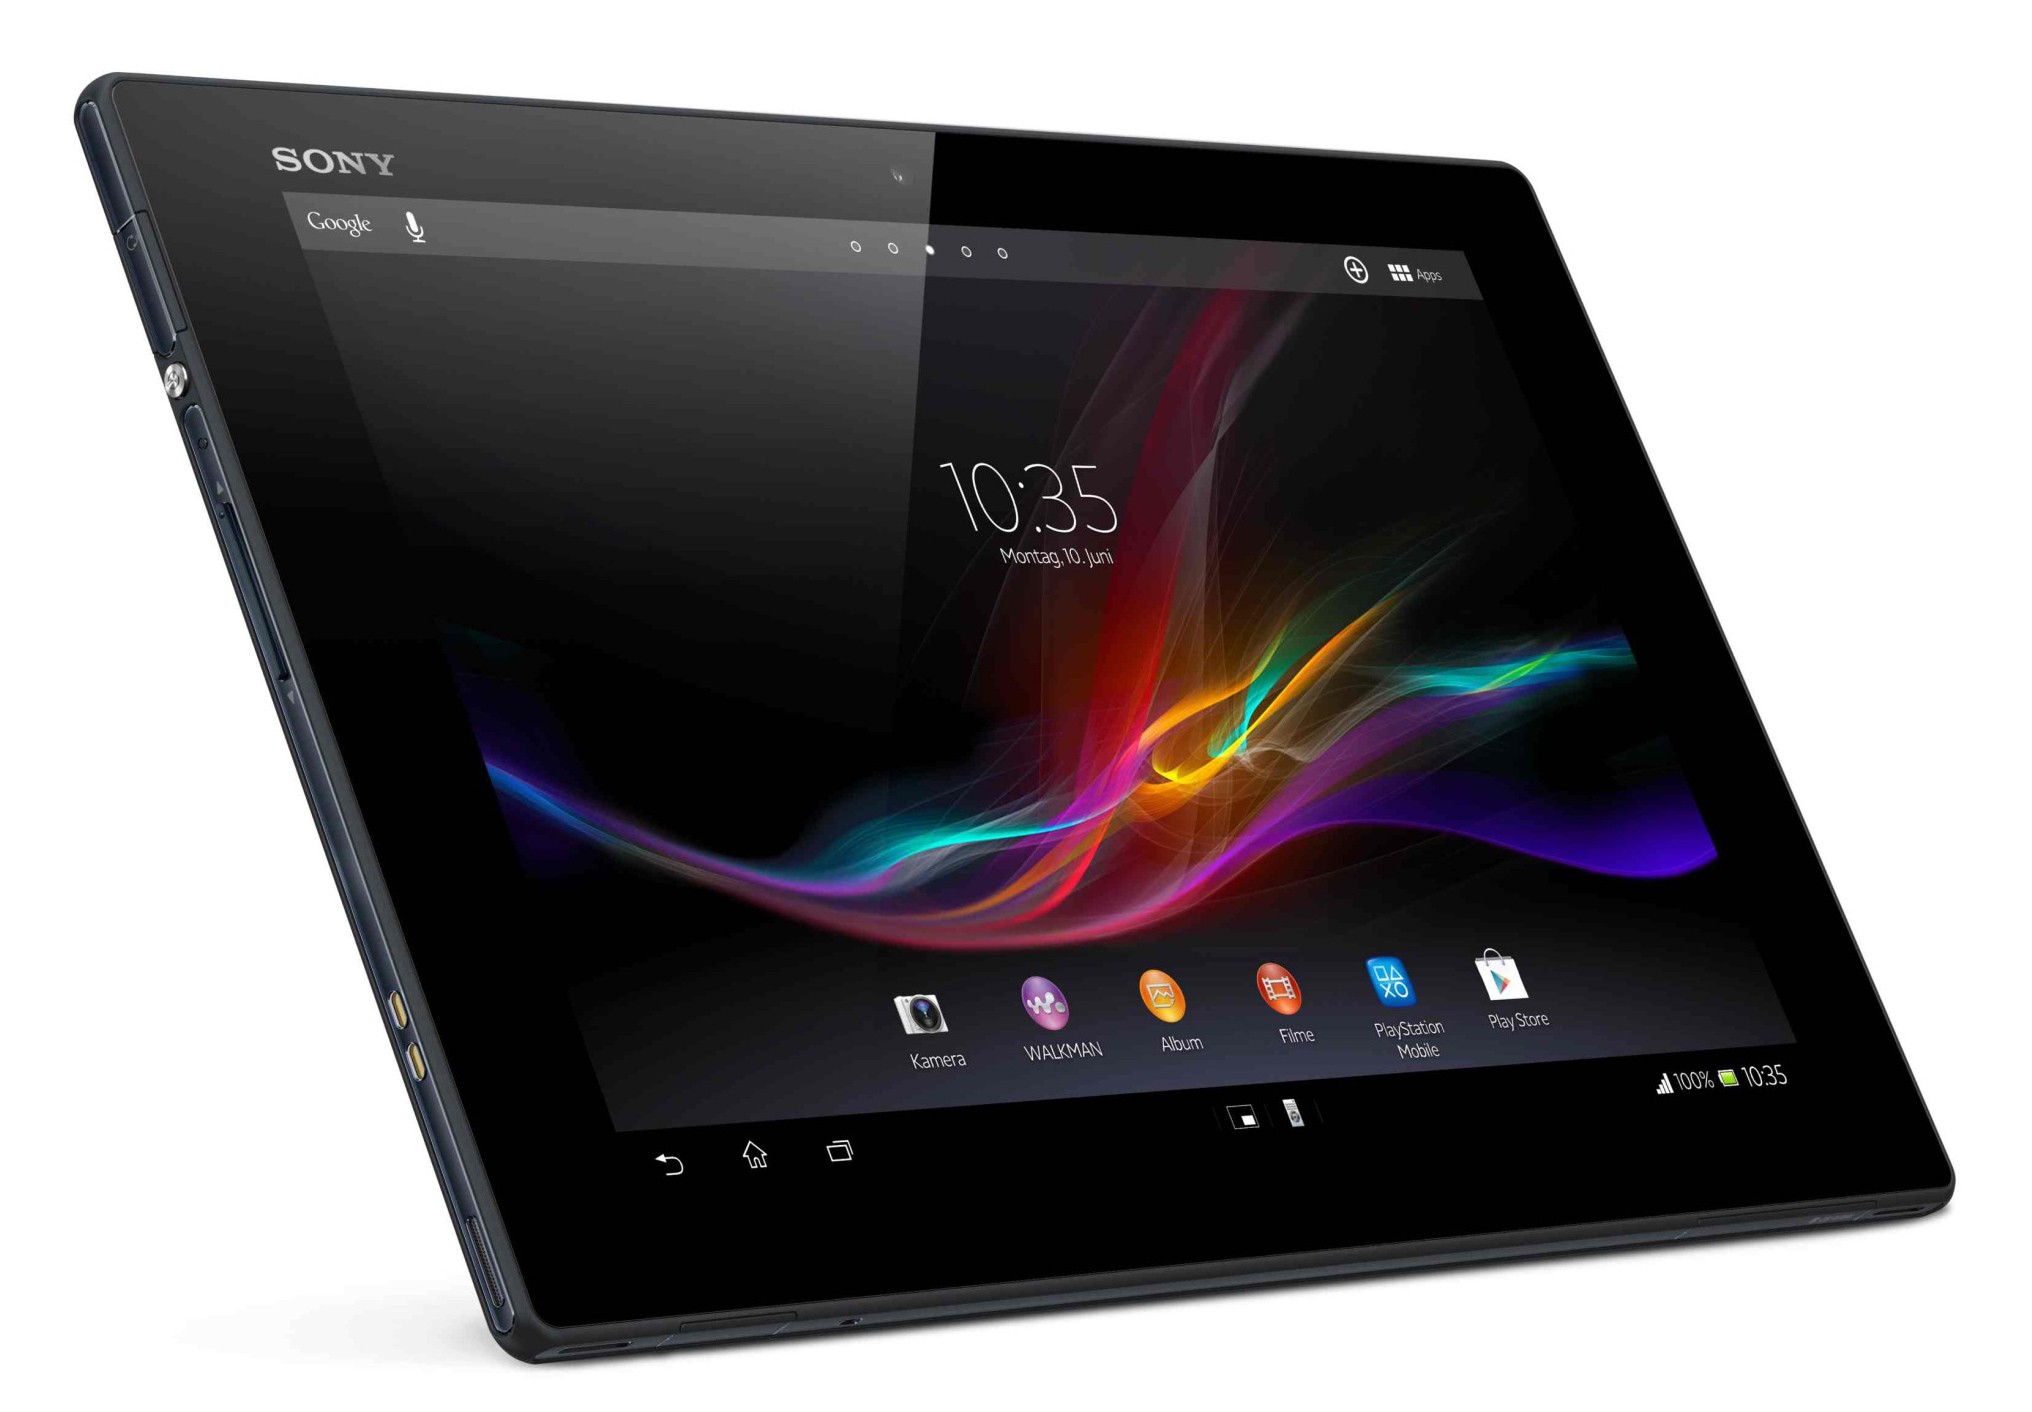 Sony Xperia Z4 Tablet #MWC2015